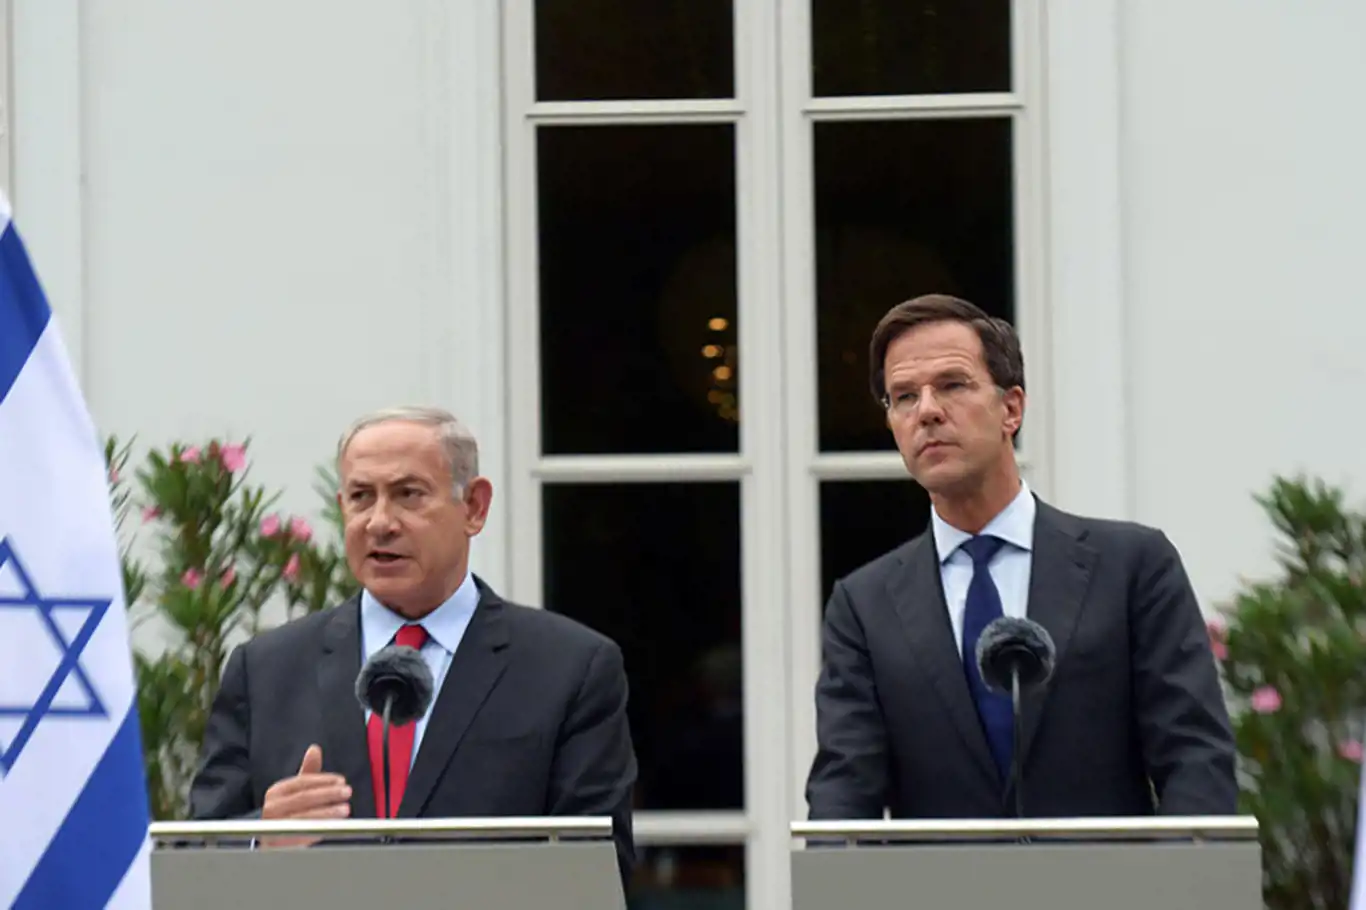 Hollanda Başbakanı Rutte: Gazze'ye yardım ulaştırılmasına izin verilmeli